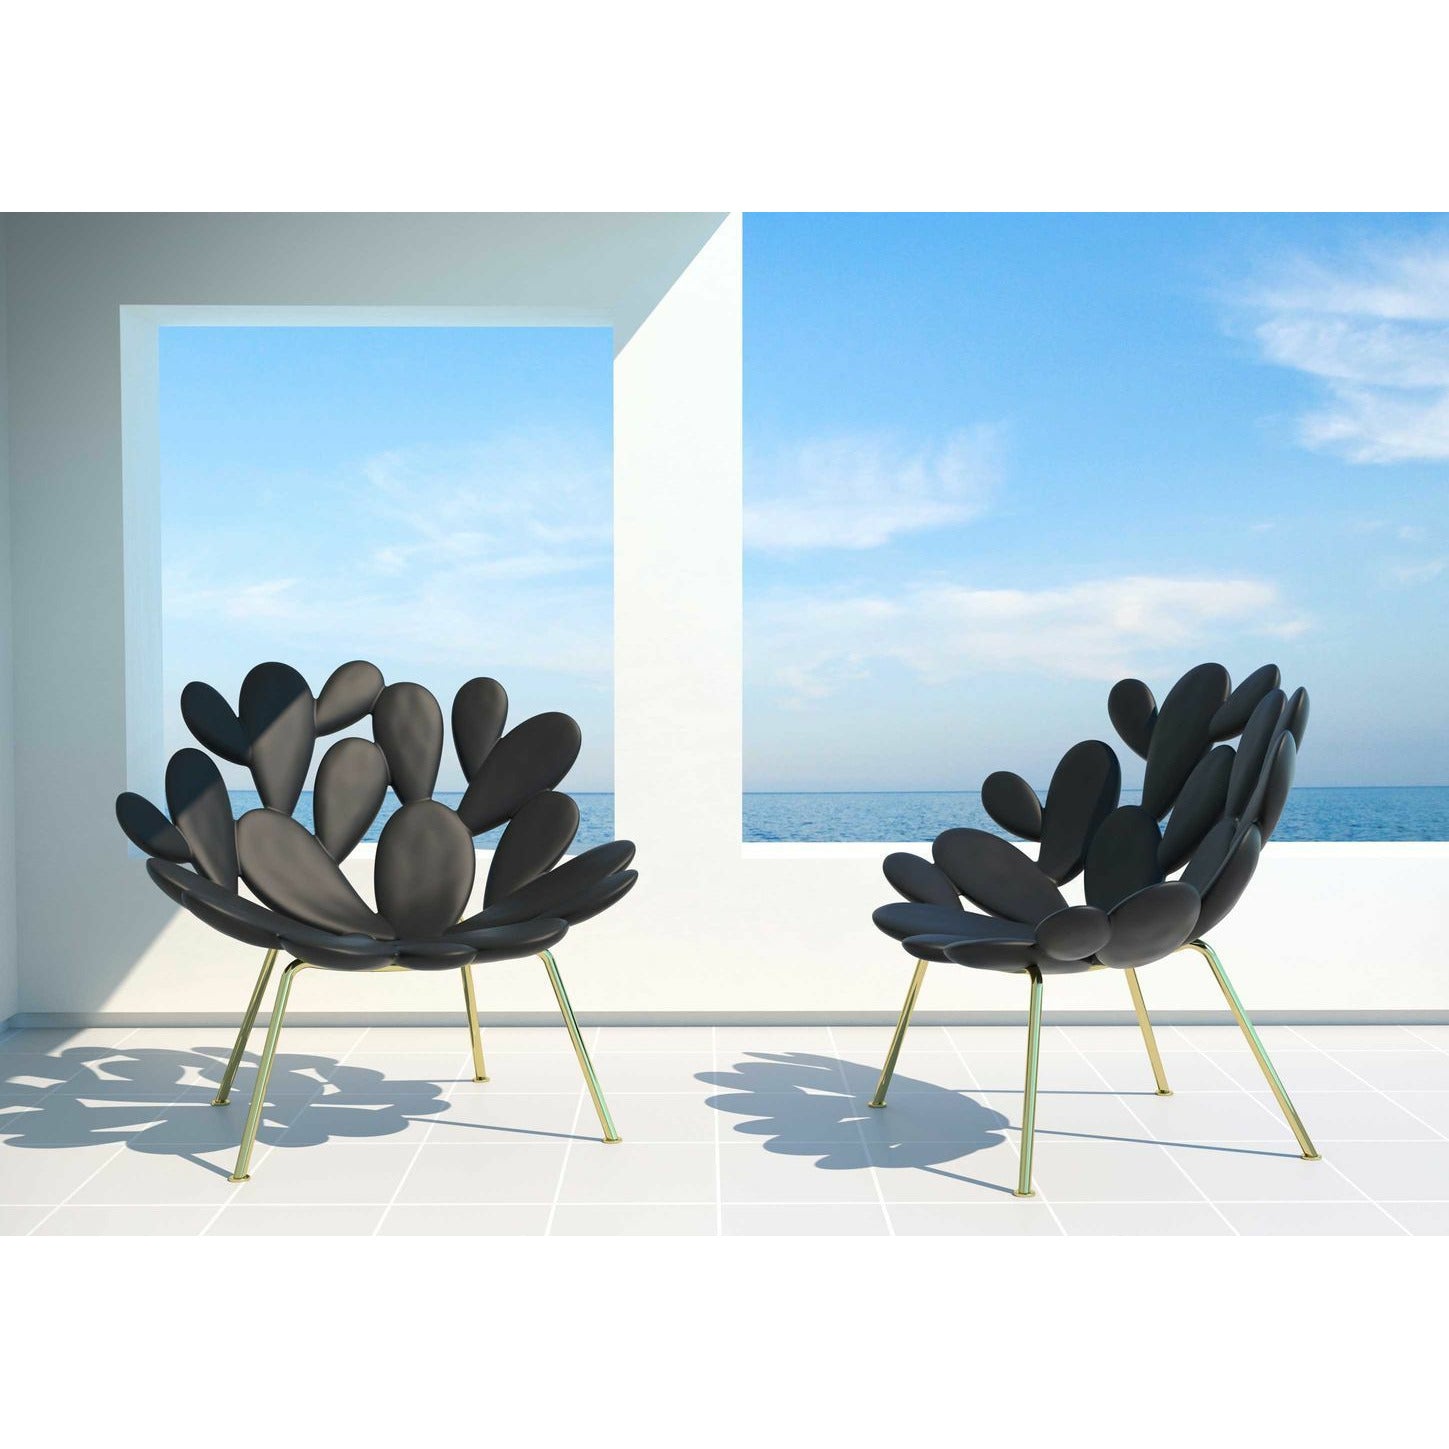 Qeeboo Filicudi fauteuil par Marcantonio, noir / laiton